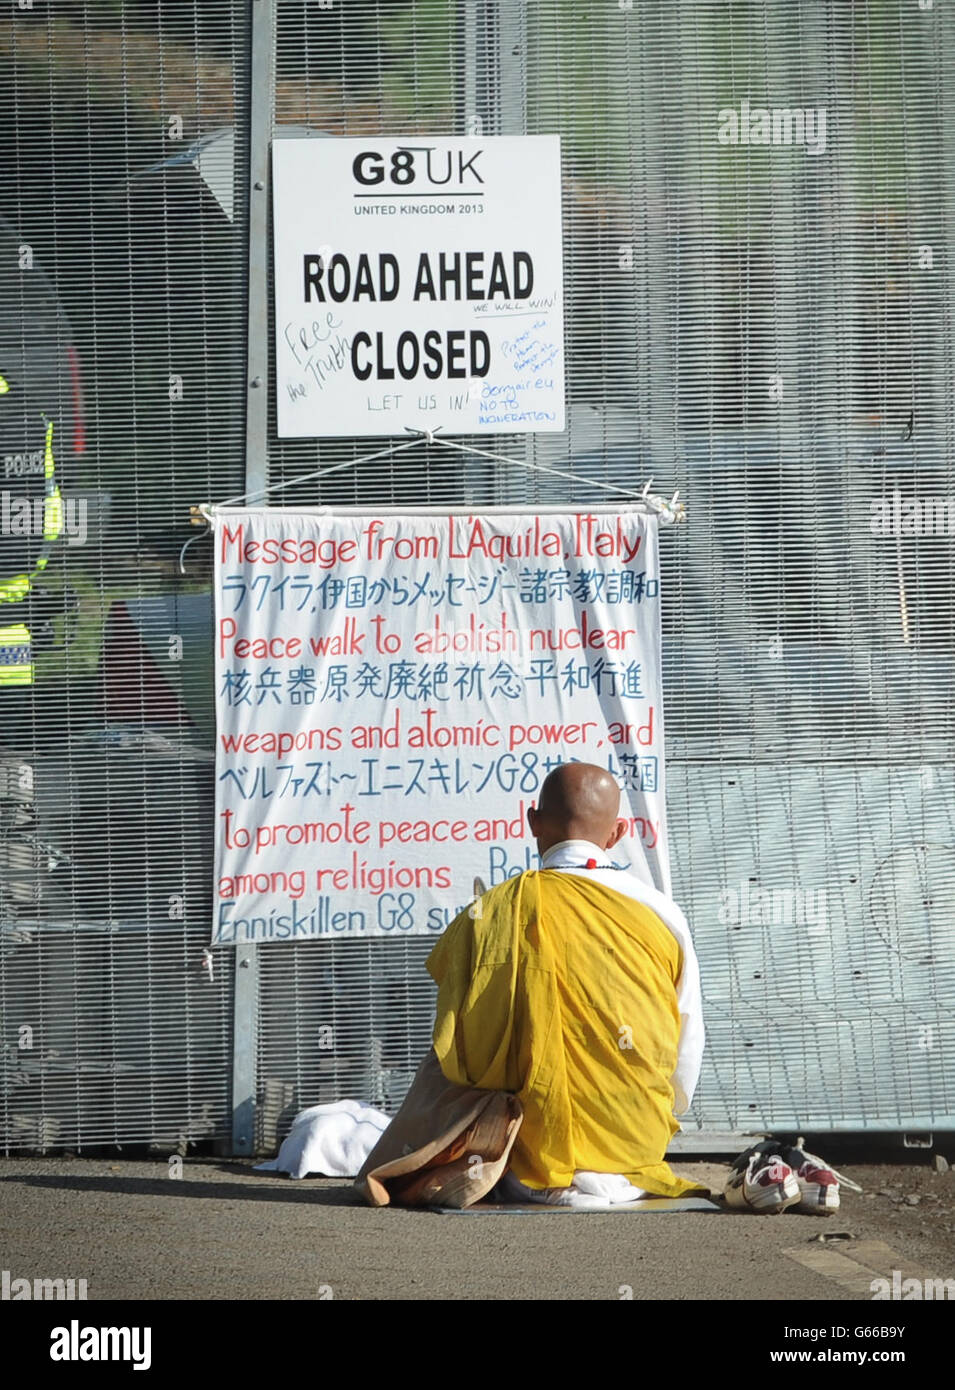 Ein Buddhistischer Monch Vor Dem Diesjahrigen G8 Gipfel Am Lough Erne In Der Nahe Von Enniskillen In Nordirland Stockfotografie Alamy